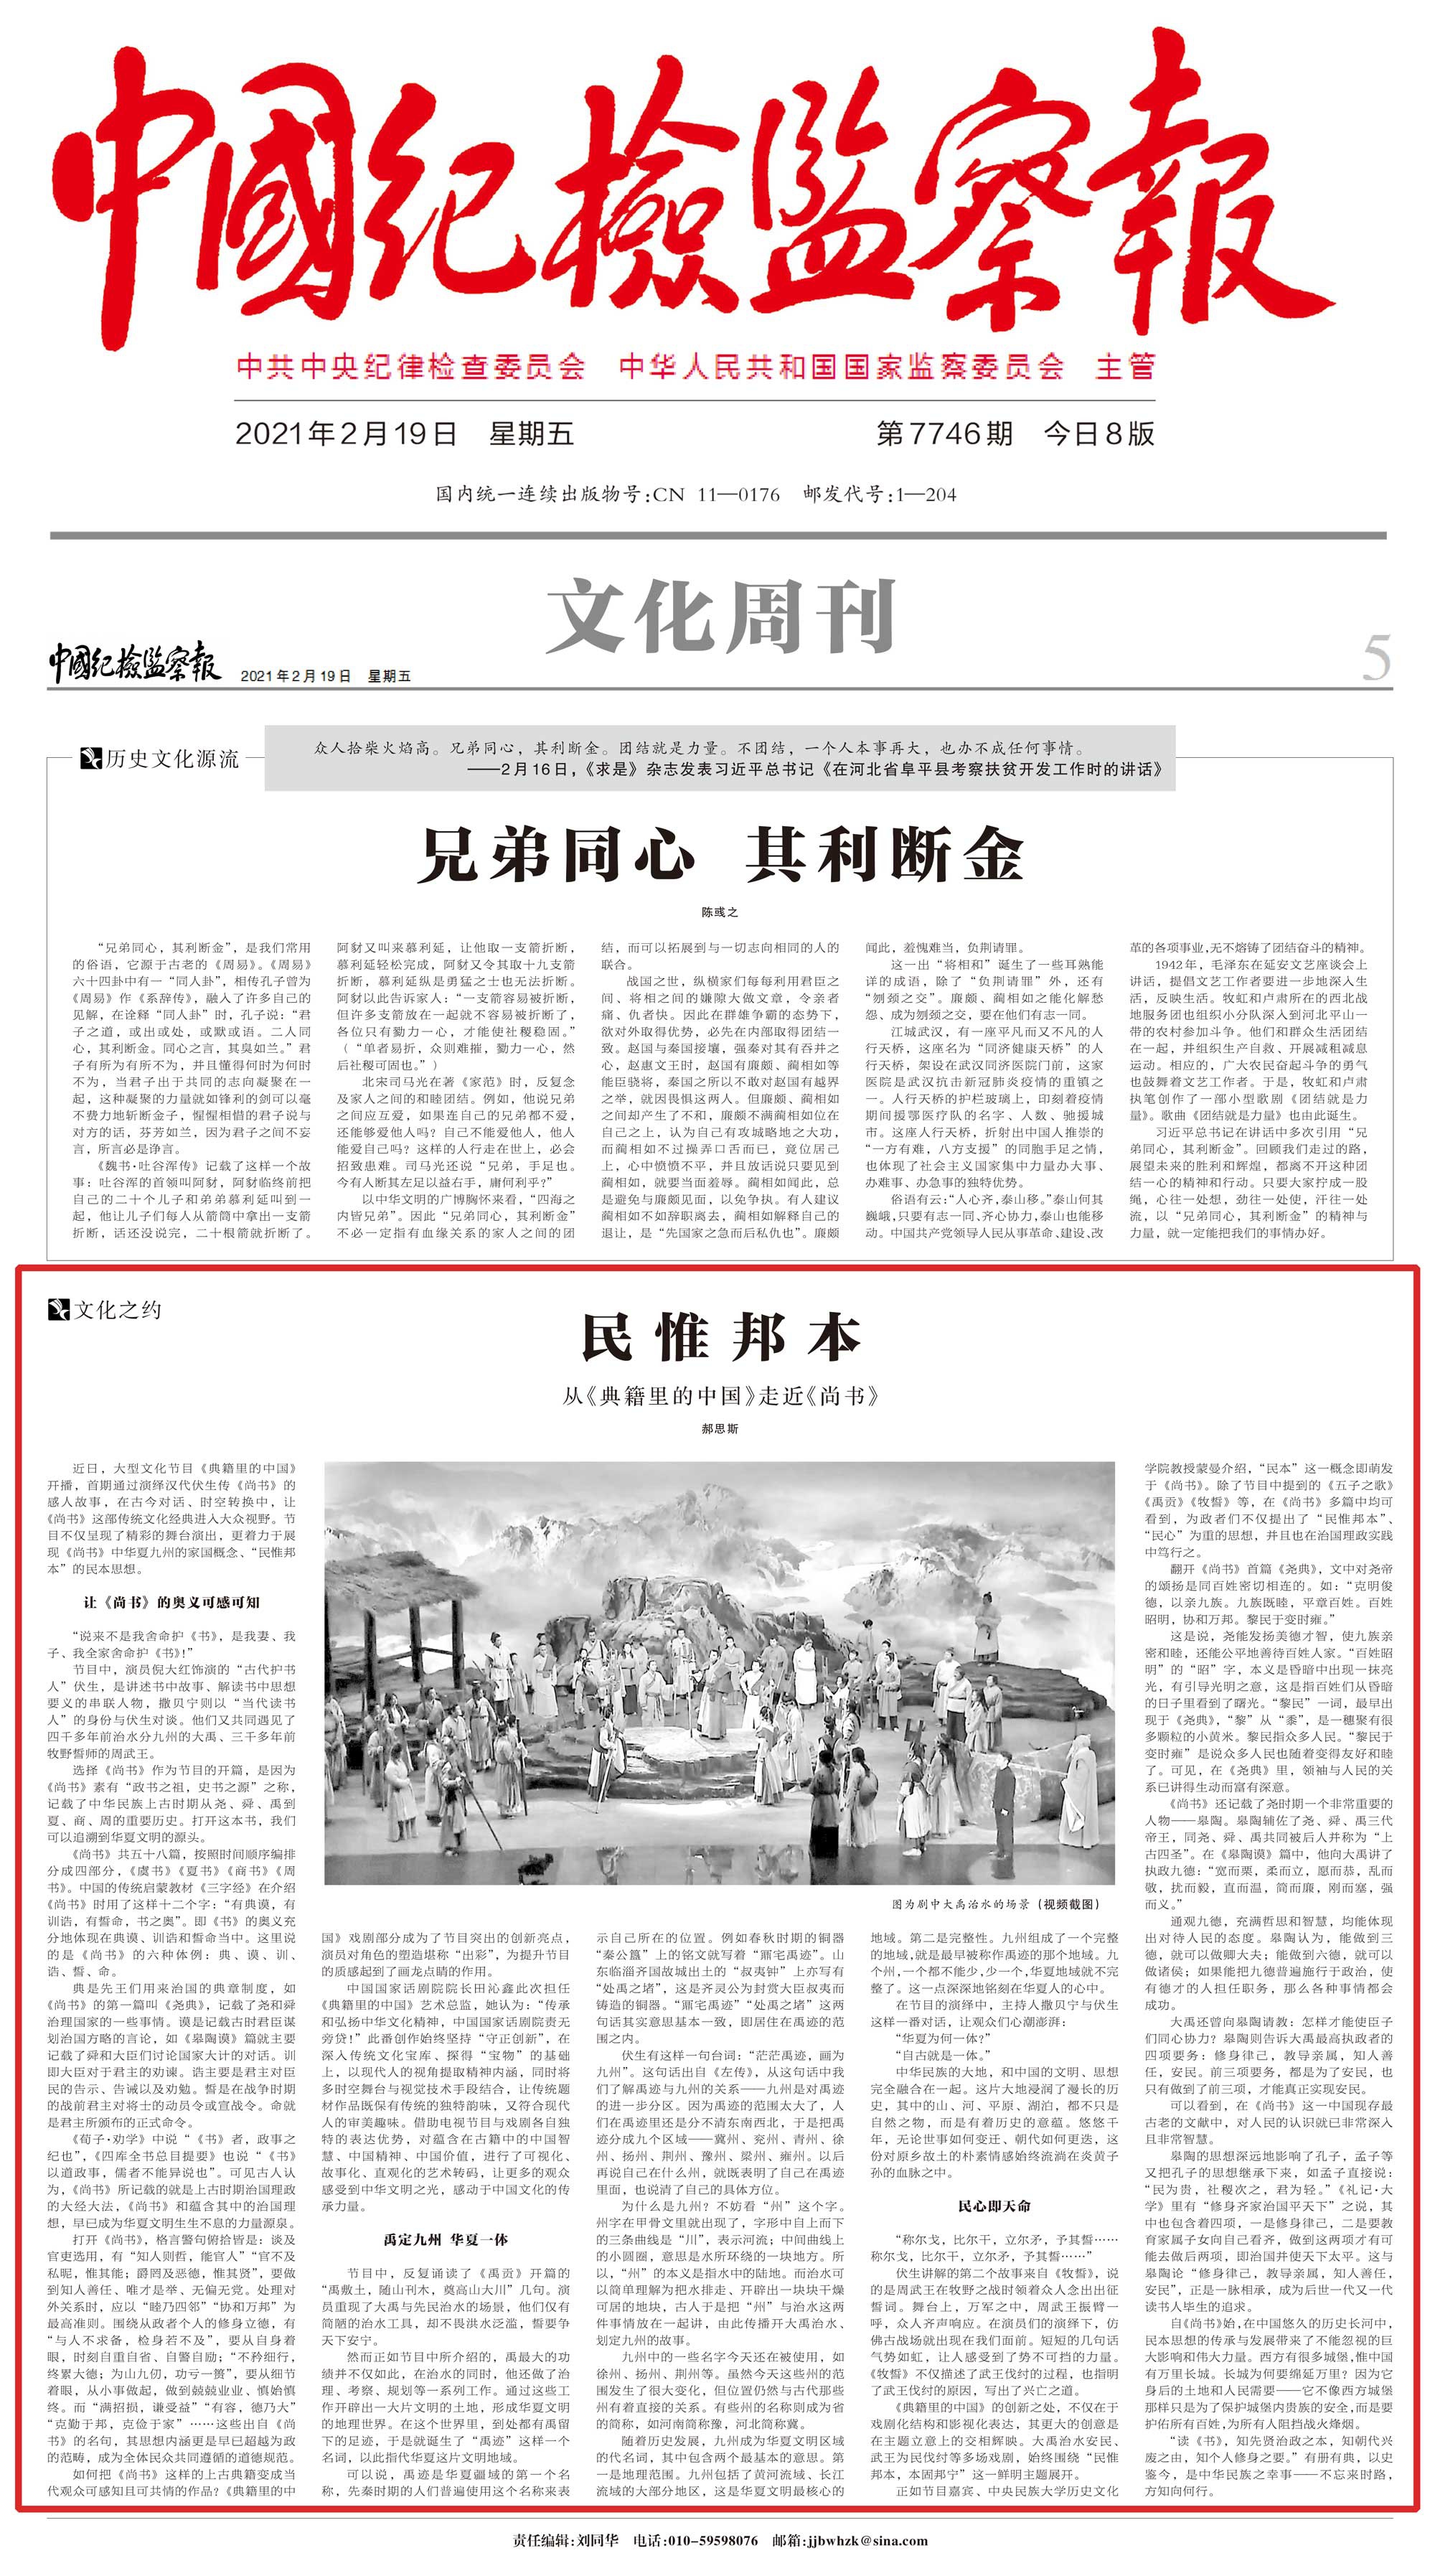 中国纪检监察报解读《典籍里的中国》首集《尚书》